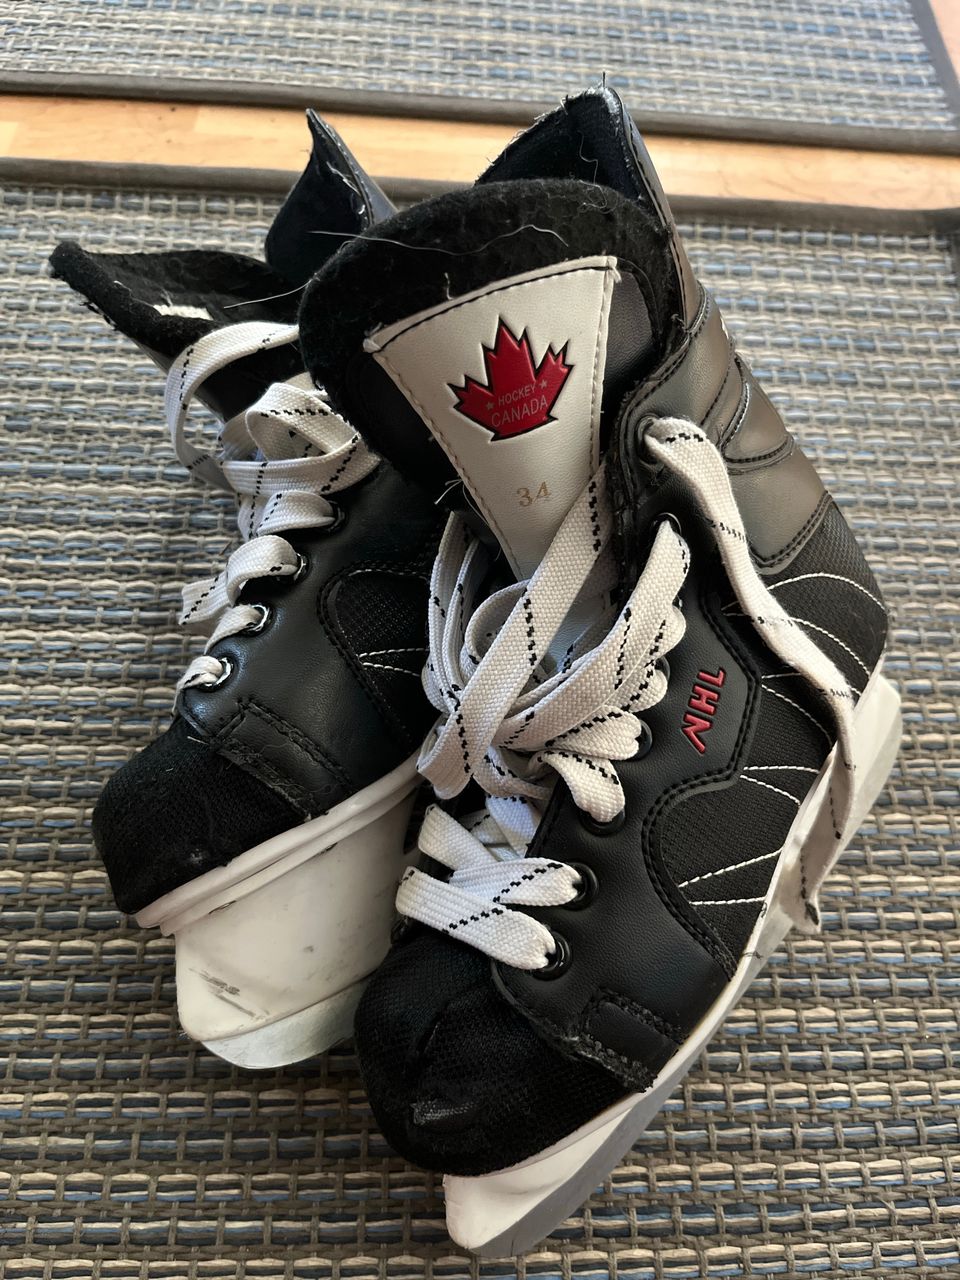 NHL Kanada hokkarit 34